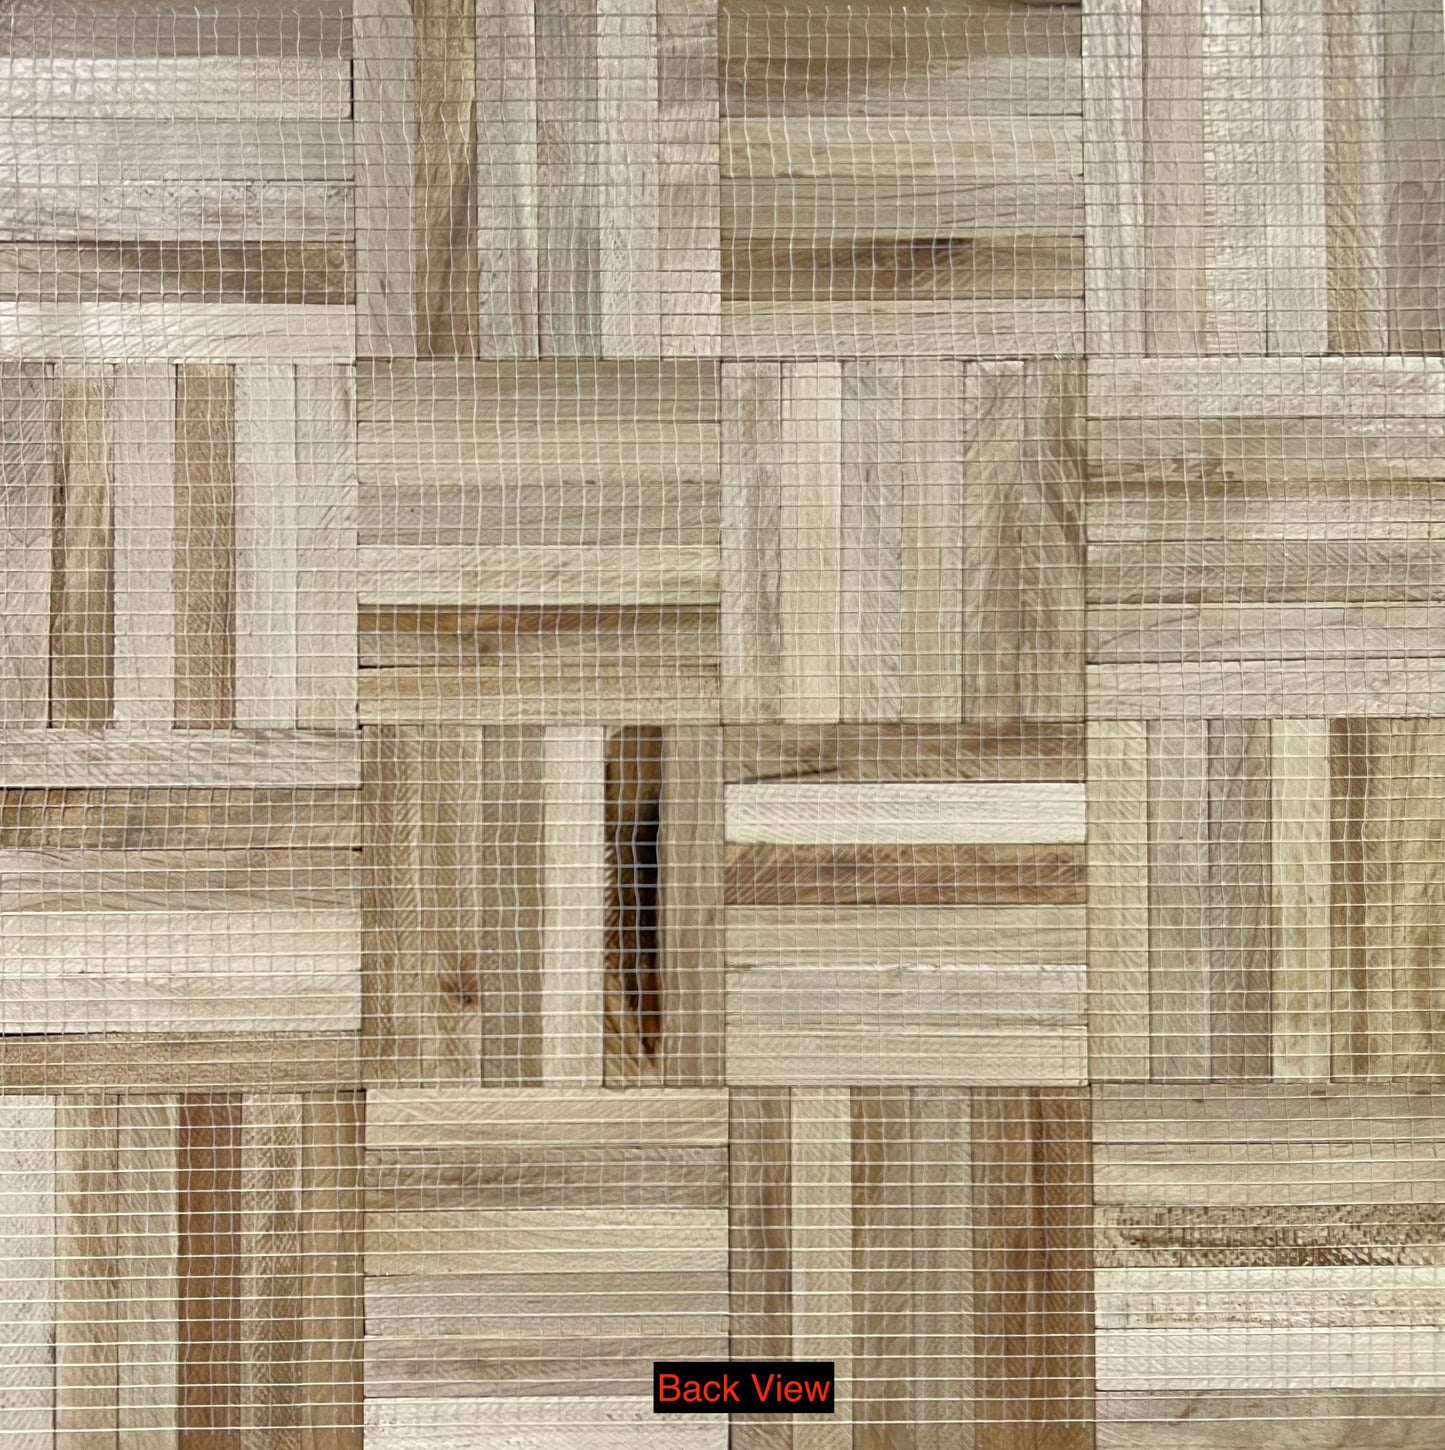 19" x 19" x 5/16" Hard Maple Unfinished 6-slat Parquet Hardwood Flooring